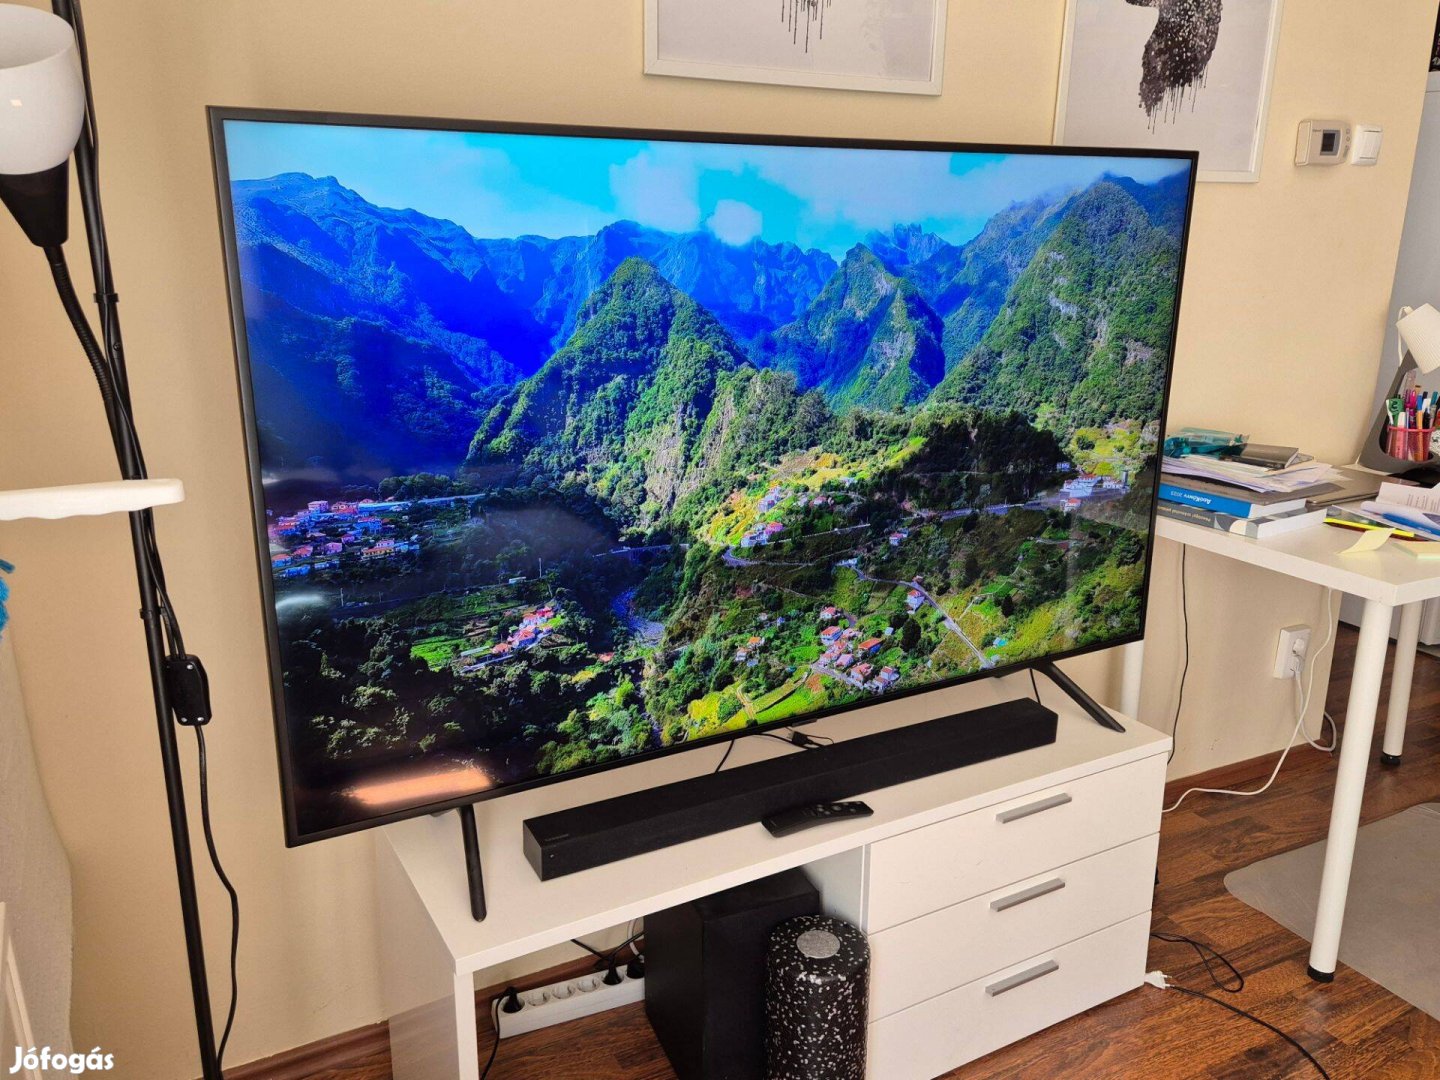 Eladó Samsung UE65RU7102 TV | 65 inch - 163 cm képátló | 4K | Smart